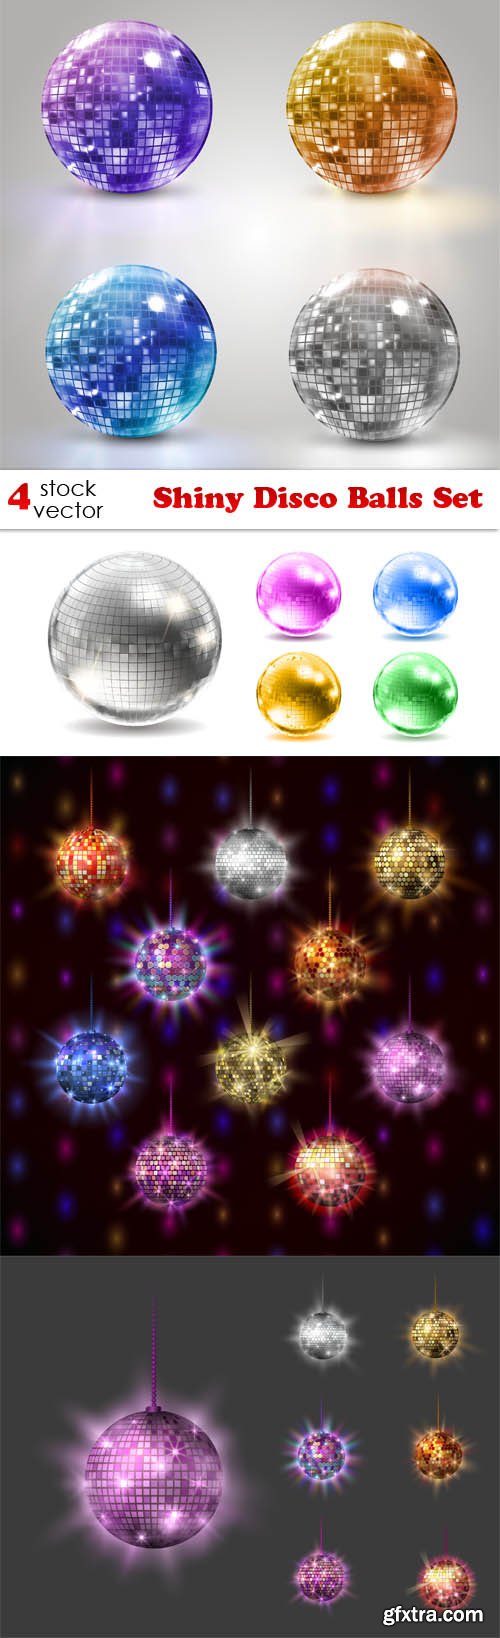 Vectors - Shiny Disco Balls Set